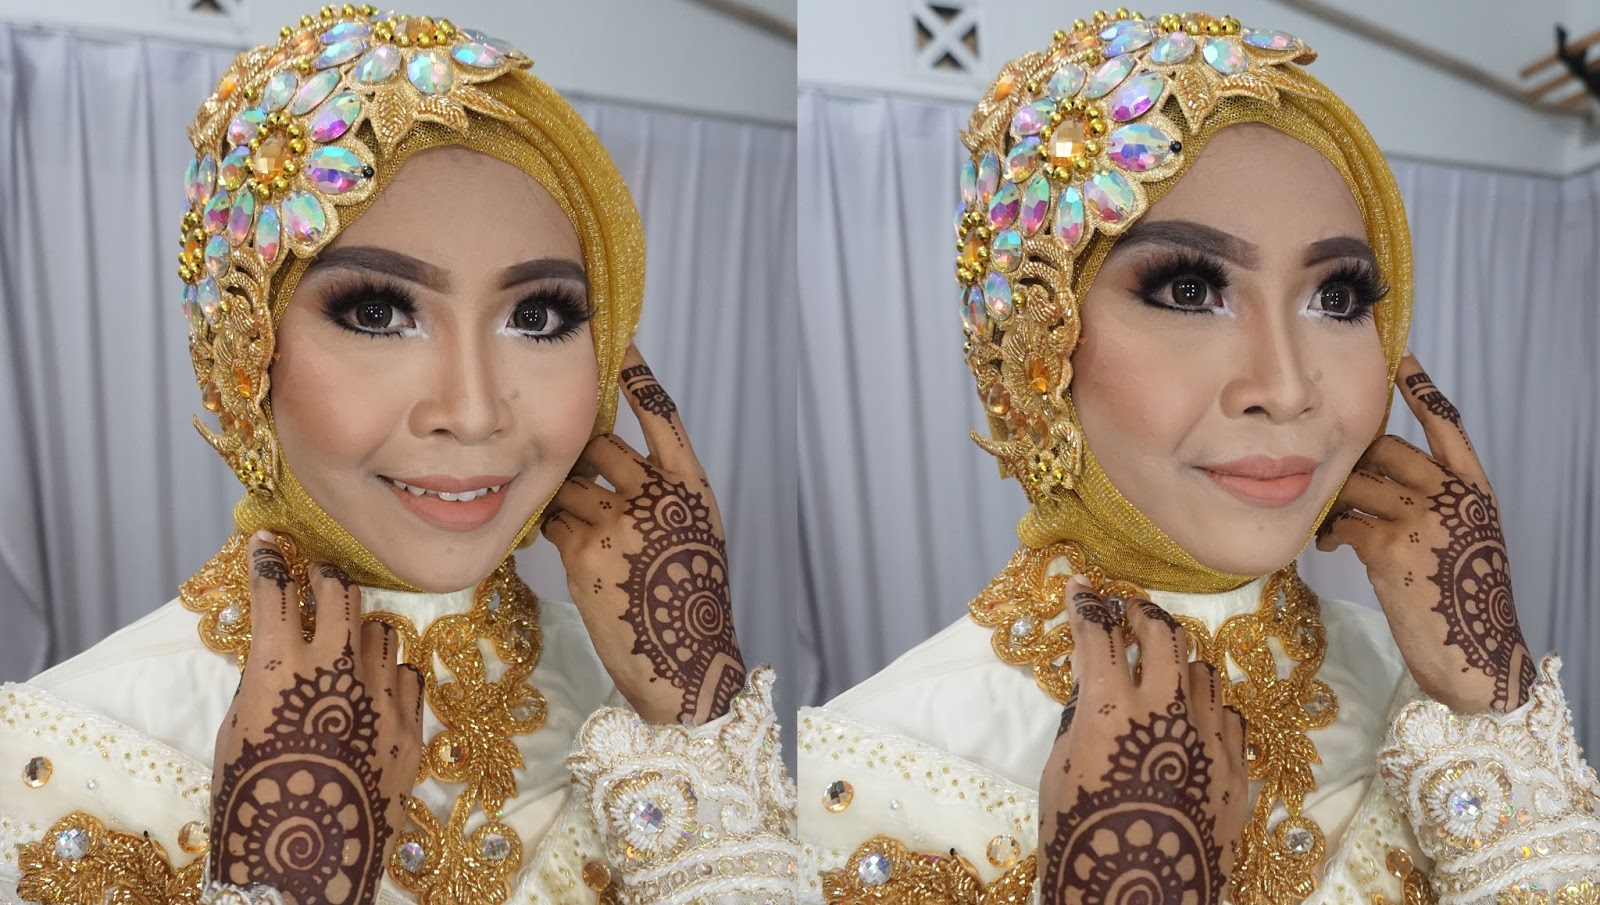 Ini Vindy Yang Ajaib Wedding Muslim Makeup Tutorial 2016 By Inivindy